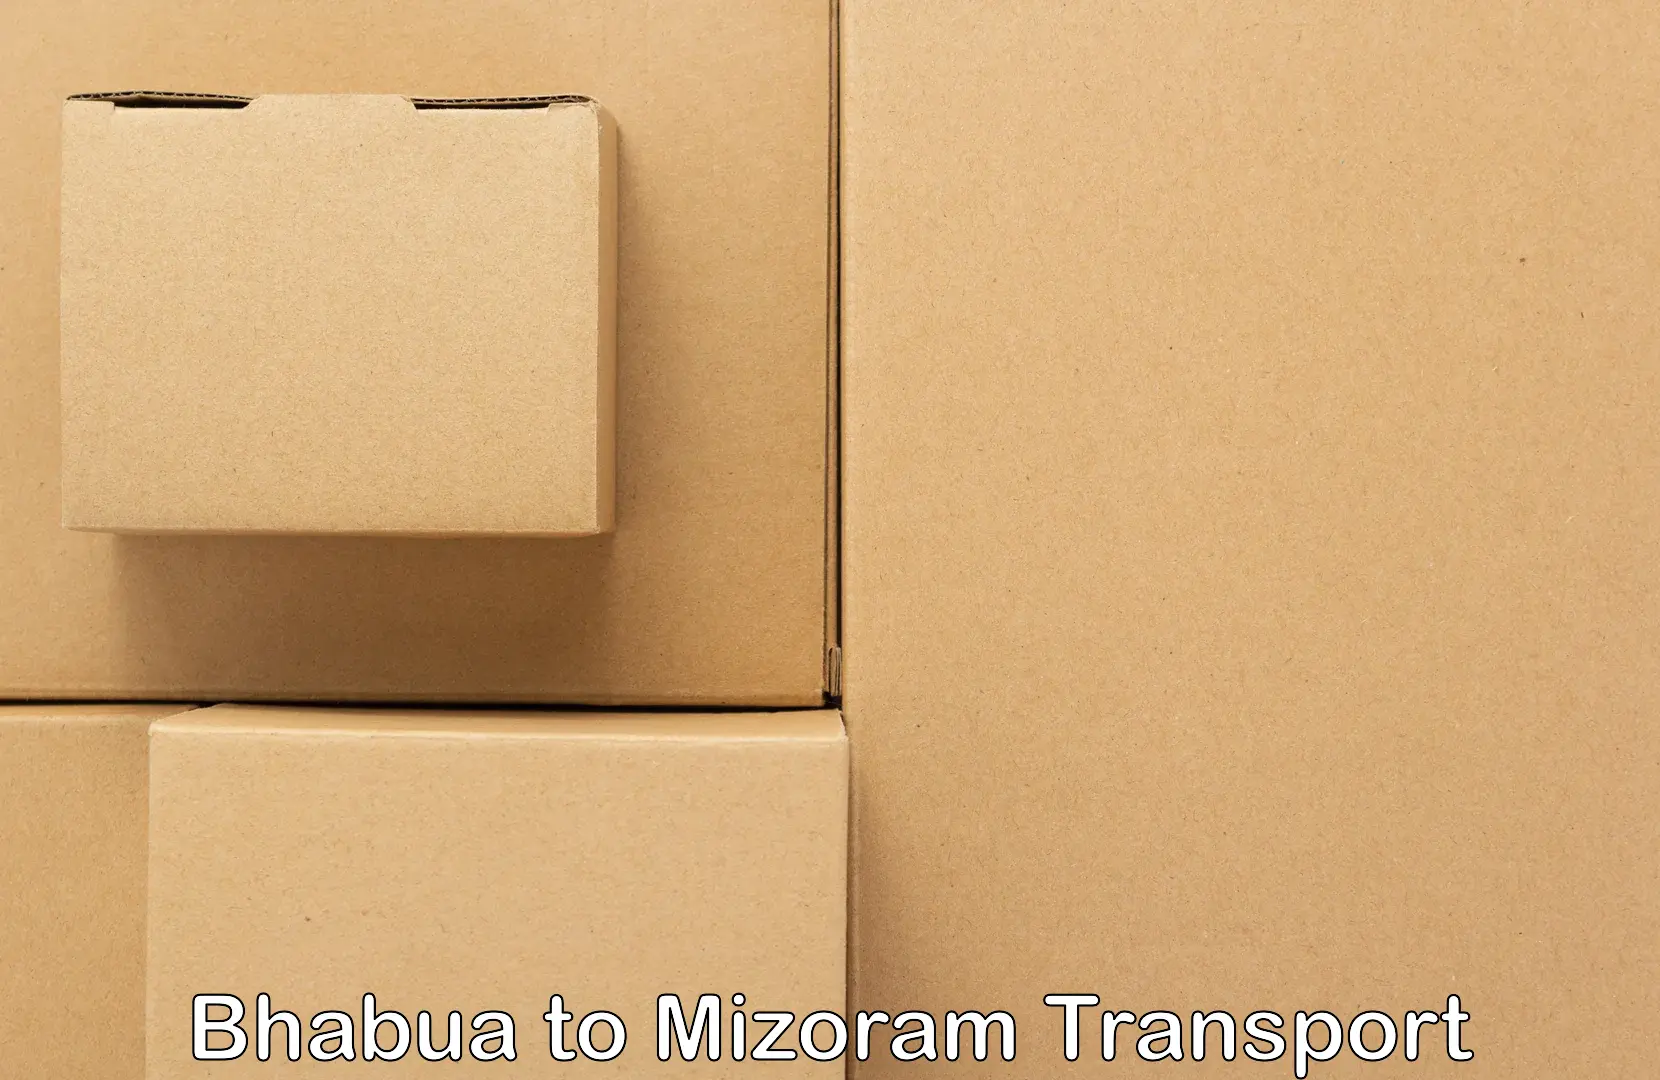 Part load transport service in India Bhabua to Mizoram